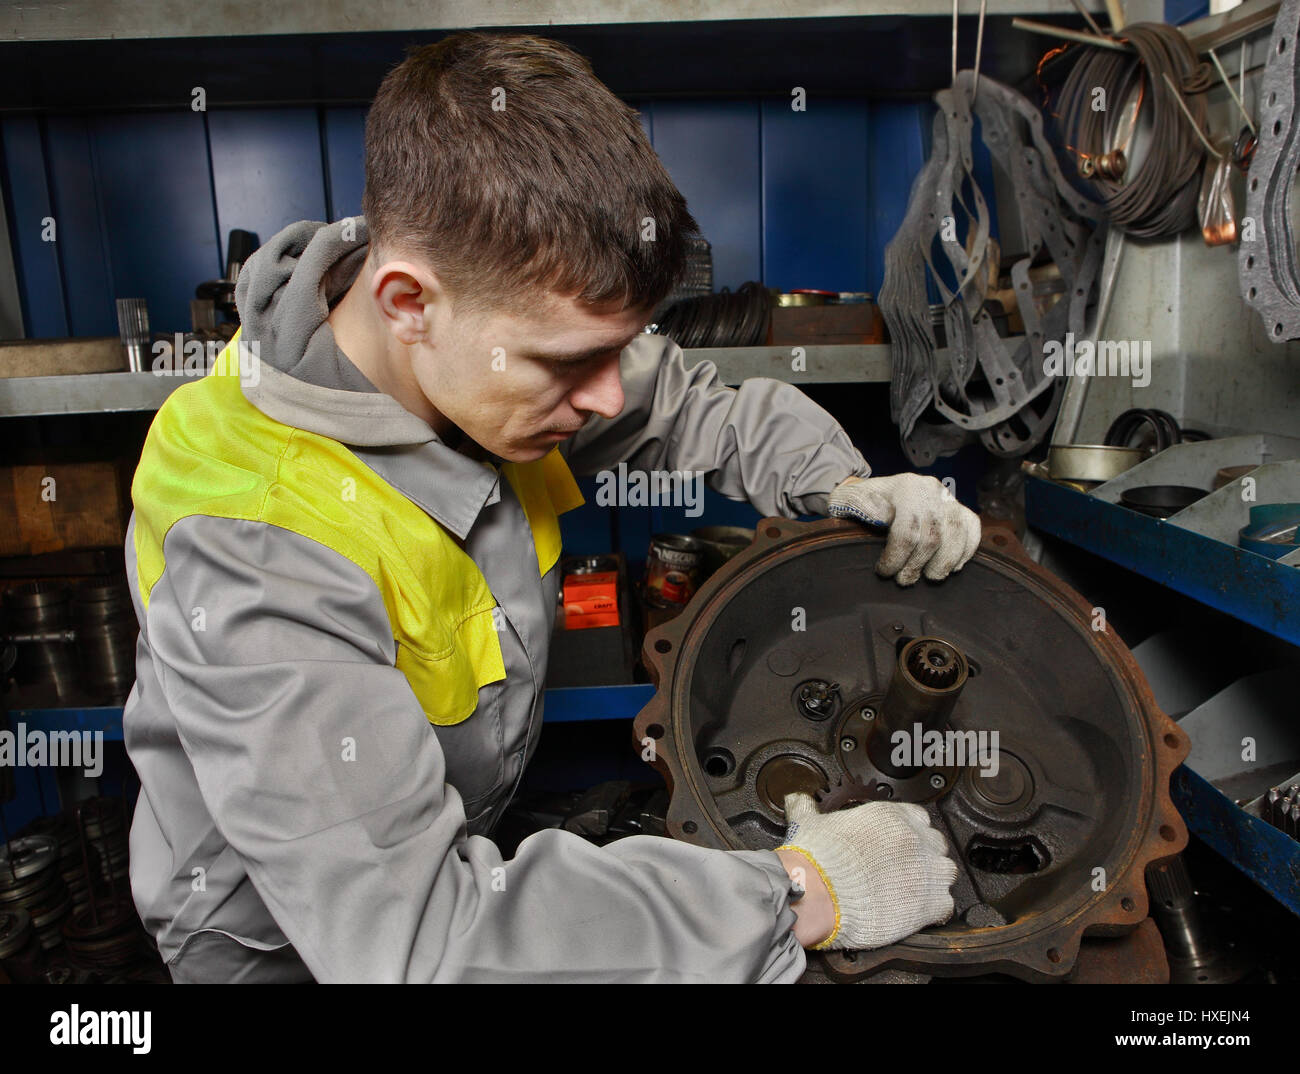 St. Petersburg, Russia - 22 December 2011: Repair shop forklifts, car mechanician assembles truck engine. Stock Photo